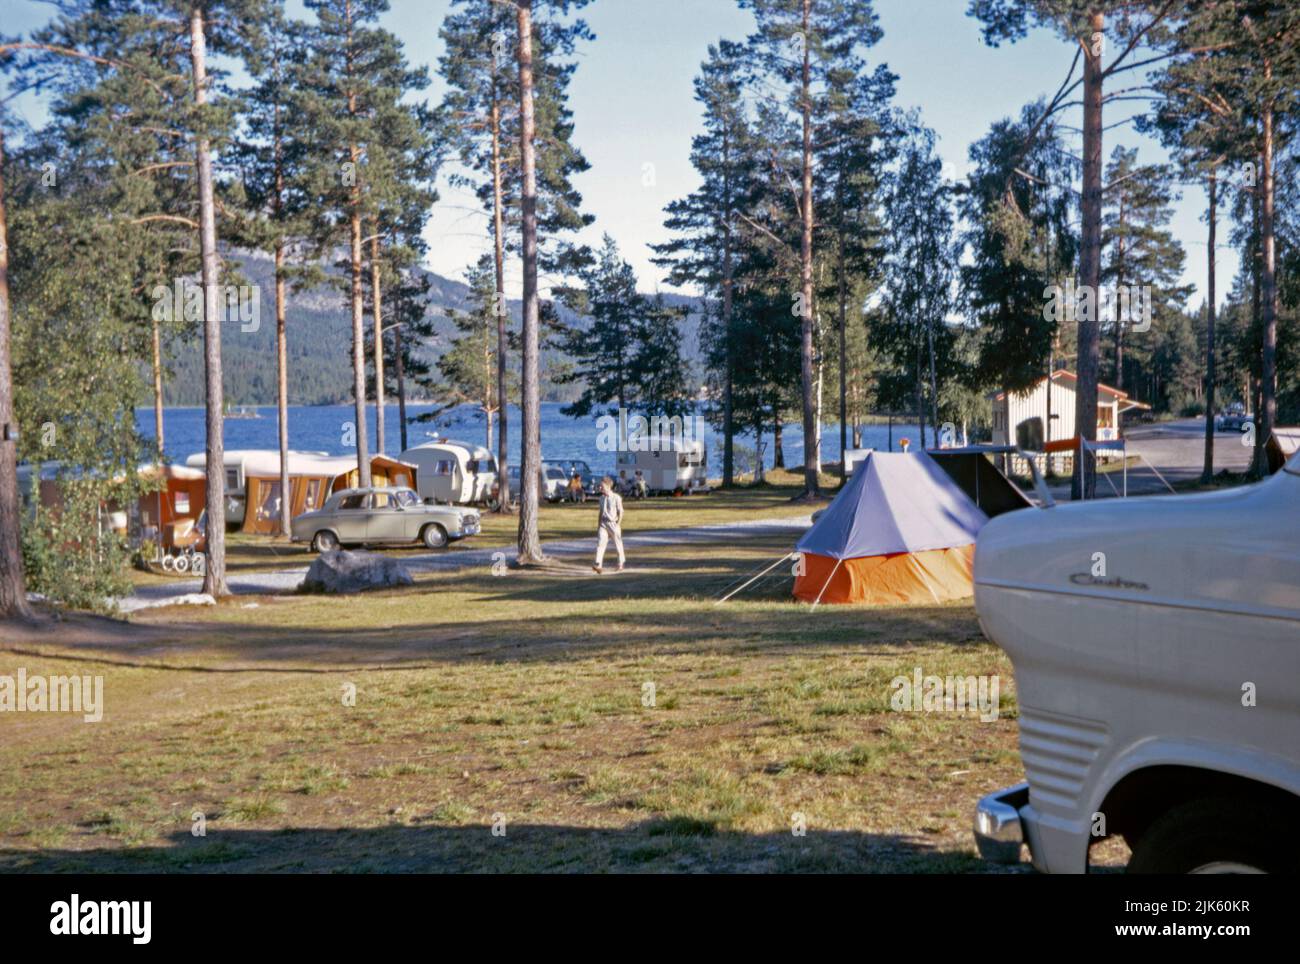 Ein Campingplatz in Telemark, Norwegen im Jahr 1970. Telemark ist eine traditionelle Region, eine ehemalige Grafschaft, Bezirk in Südnorwegen. Zelte und Wohnwagen befinden sich neben einem Seeufer. Stockfoto